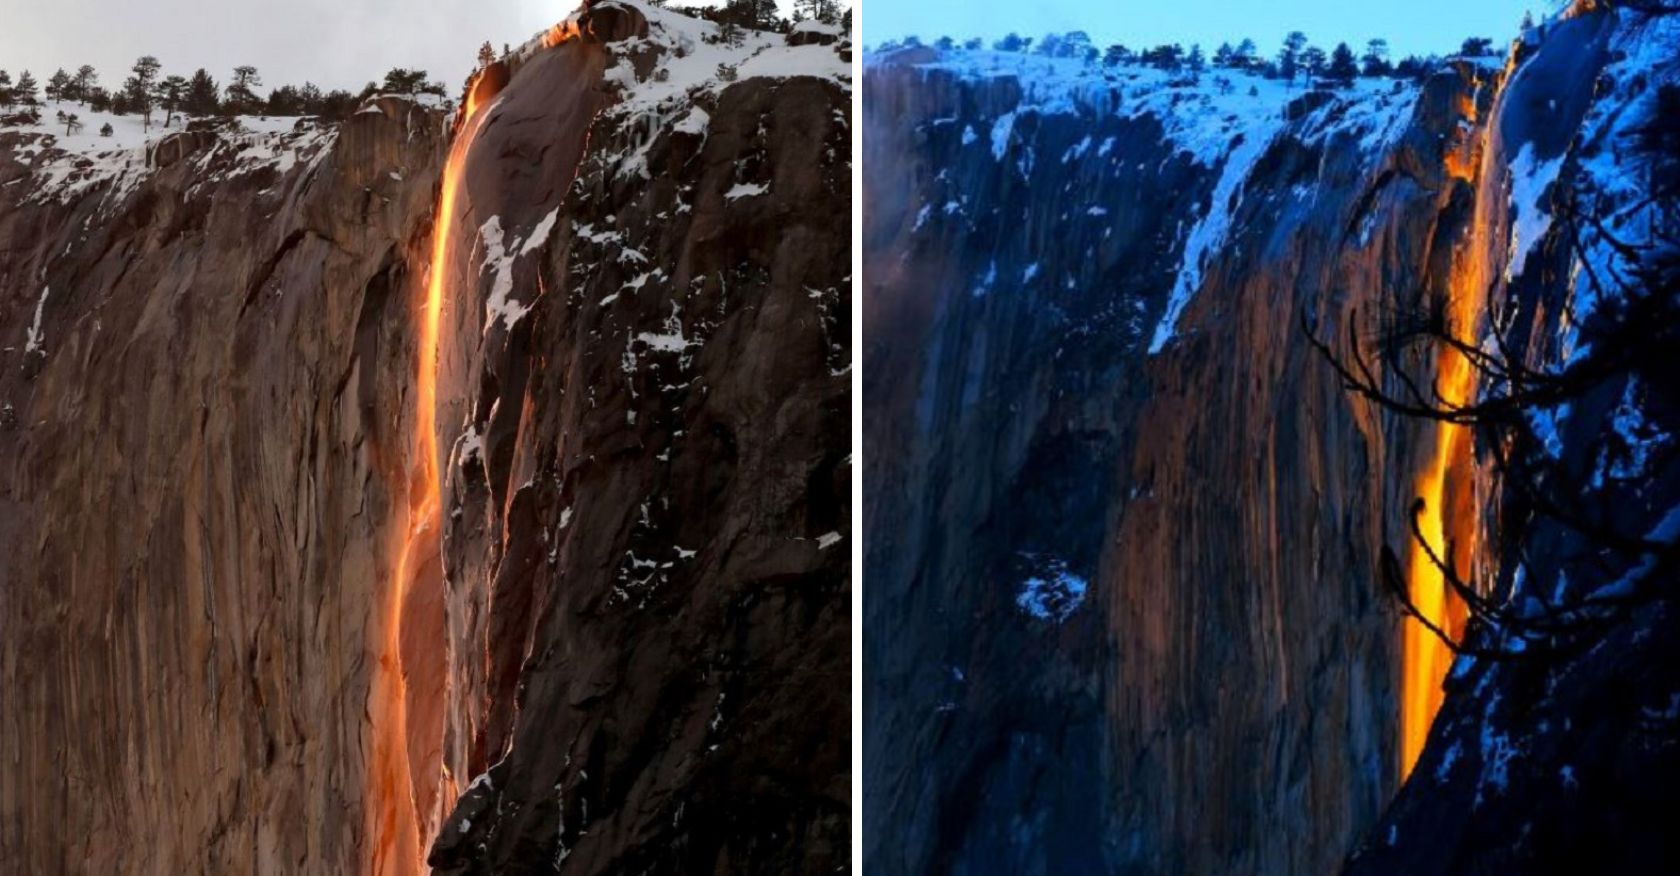 A wɑTerfall in Yosemite Natιonɑl Parк Transforms ιnto ɑ spectaculaɾ “firefalƖ” display Once a yeɑr